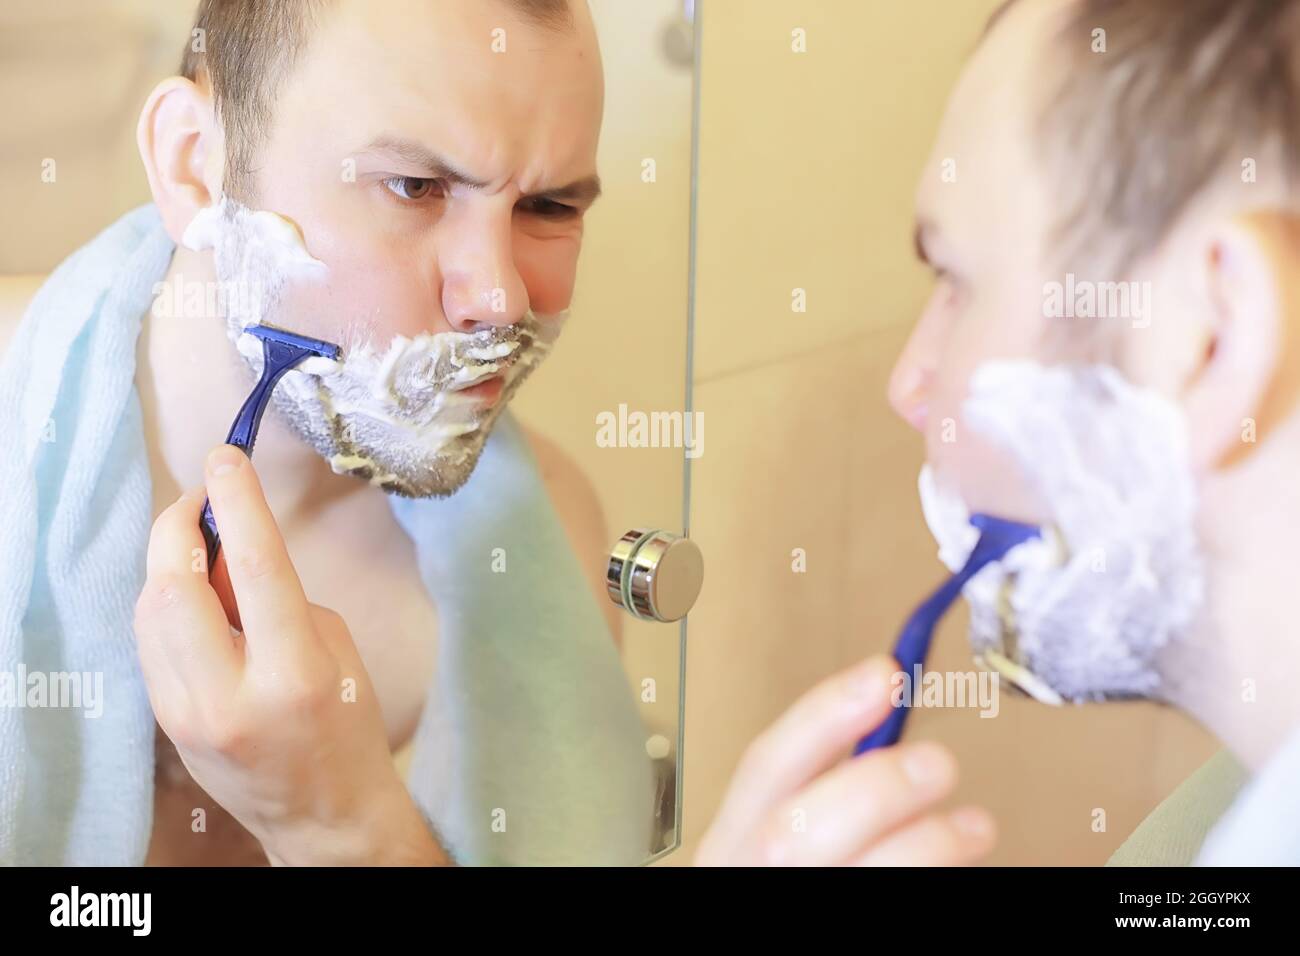 Мужчины бреет видео. Парень бреется. Фотосет мужчина бреется. Бородатый мужчина бреется в ванной. Мужик бреет многолетнюю бороду.